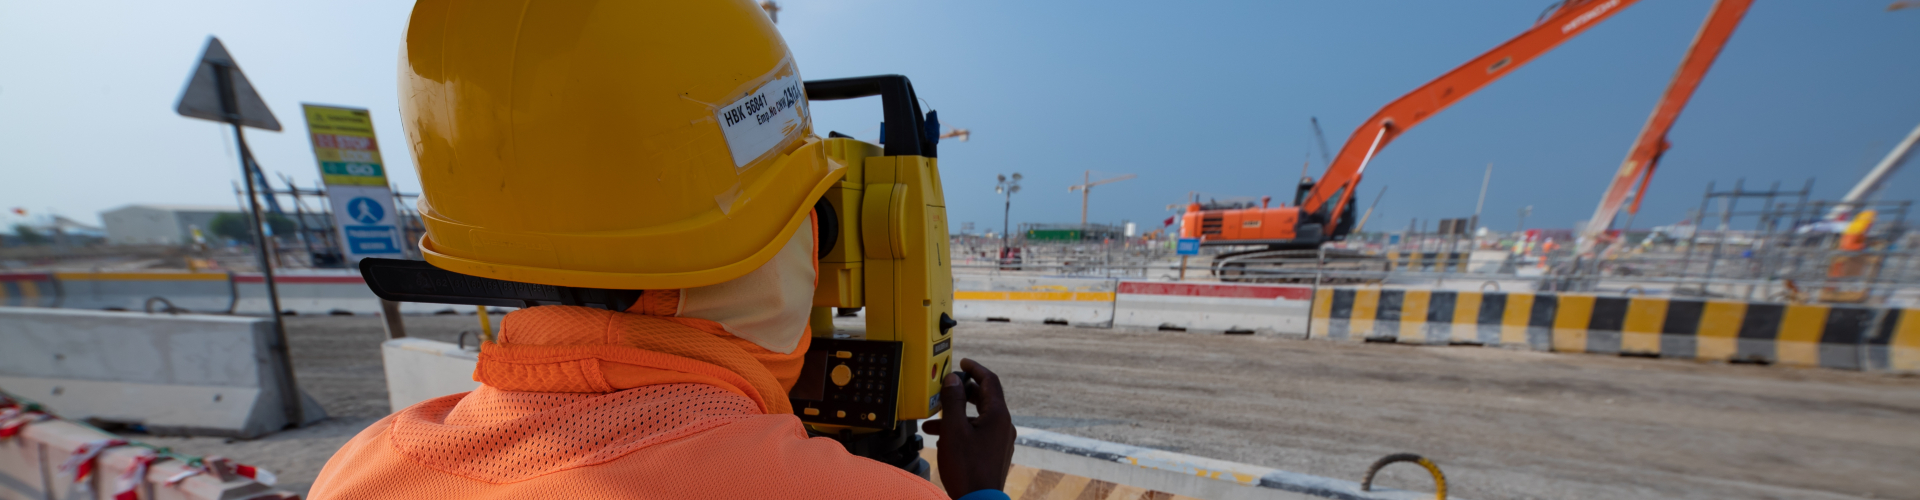 قطر باور للهندسة والمقاولات تحرص على تعريف عمالها بمعايير السلامة